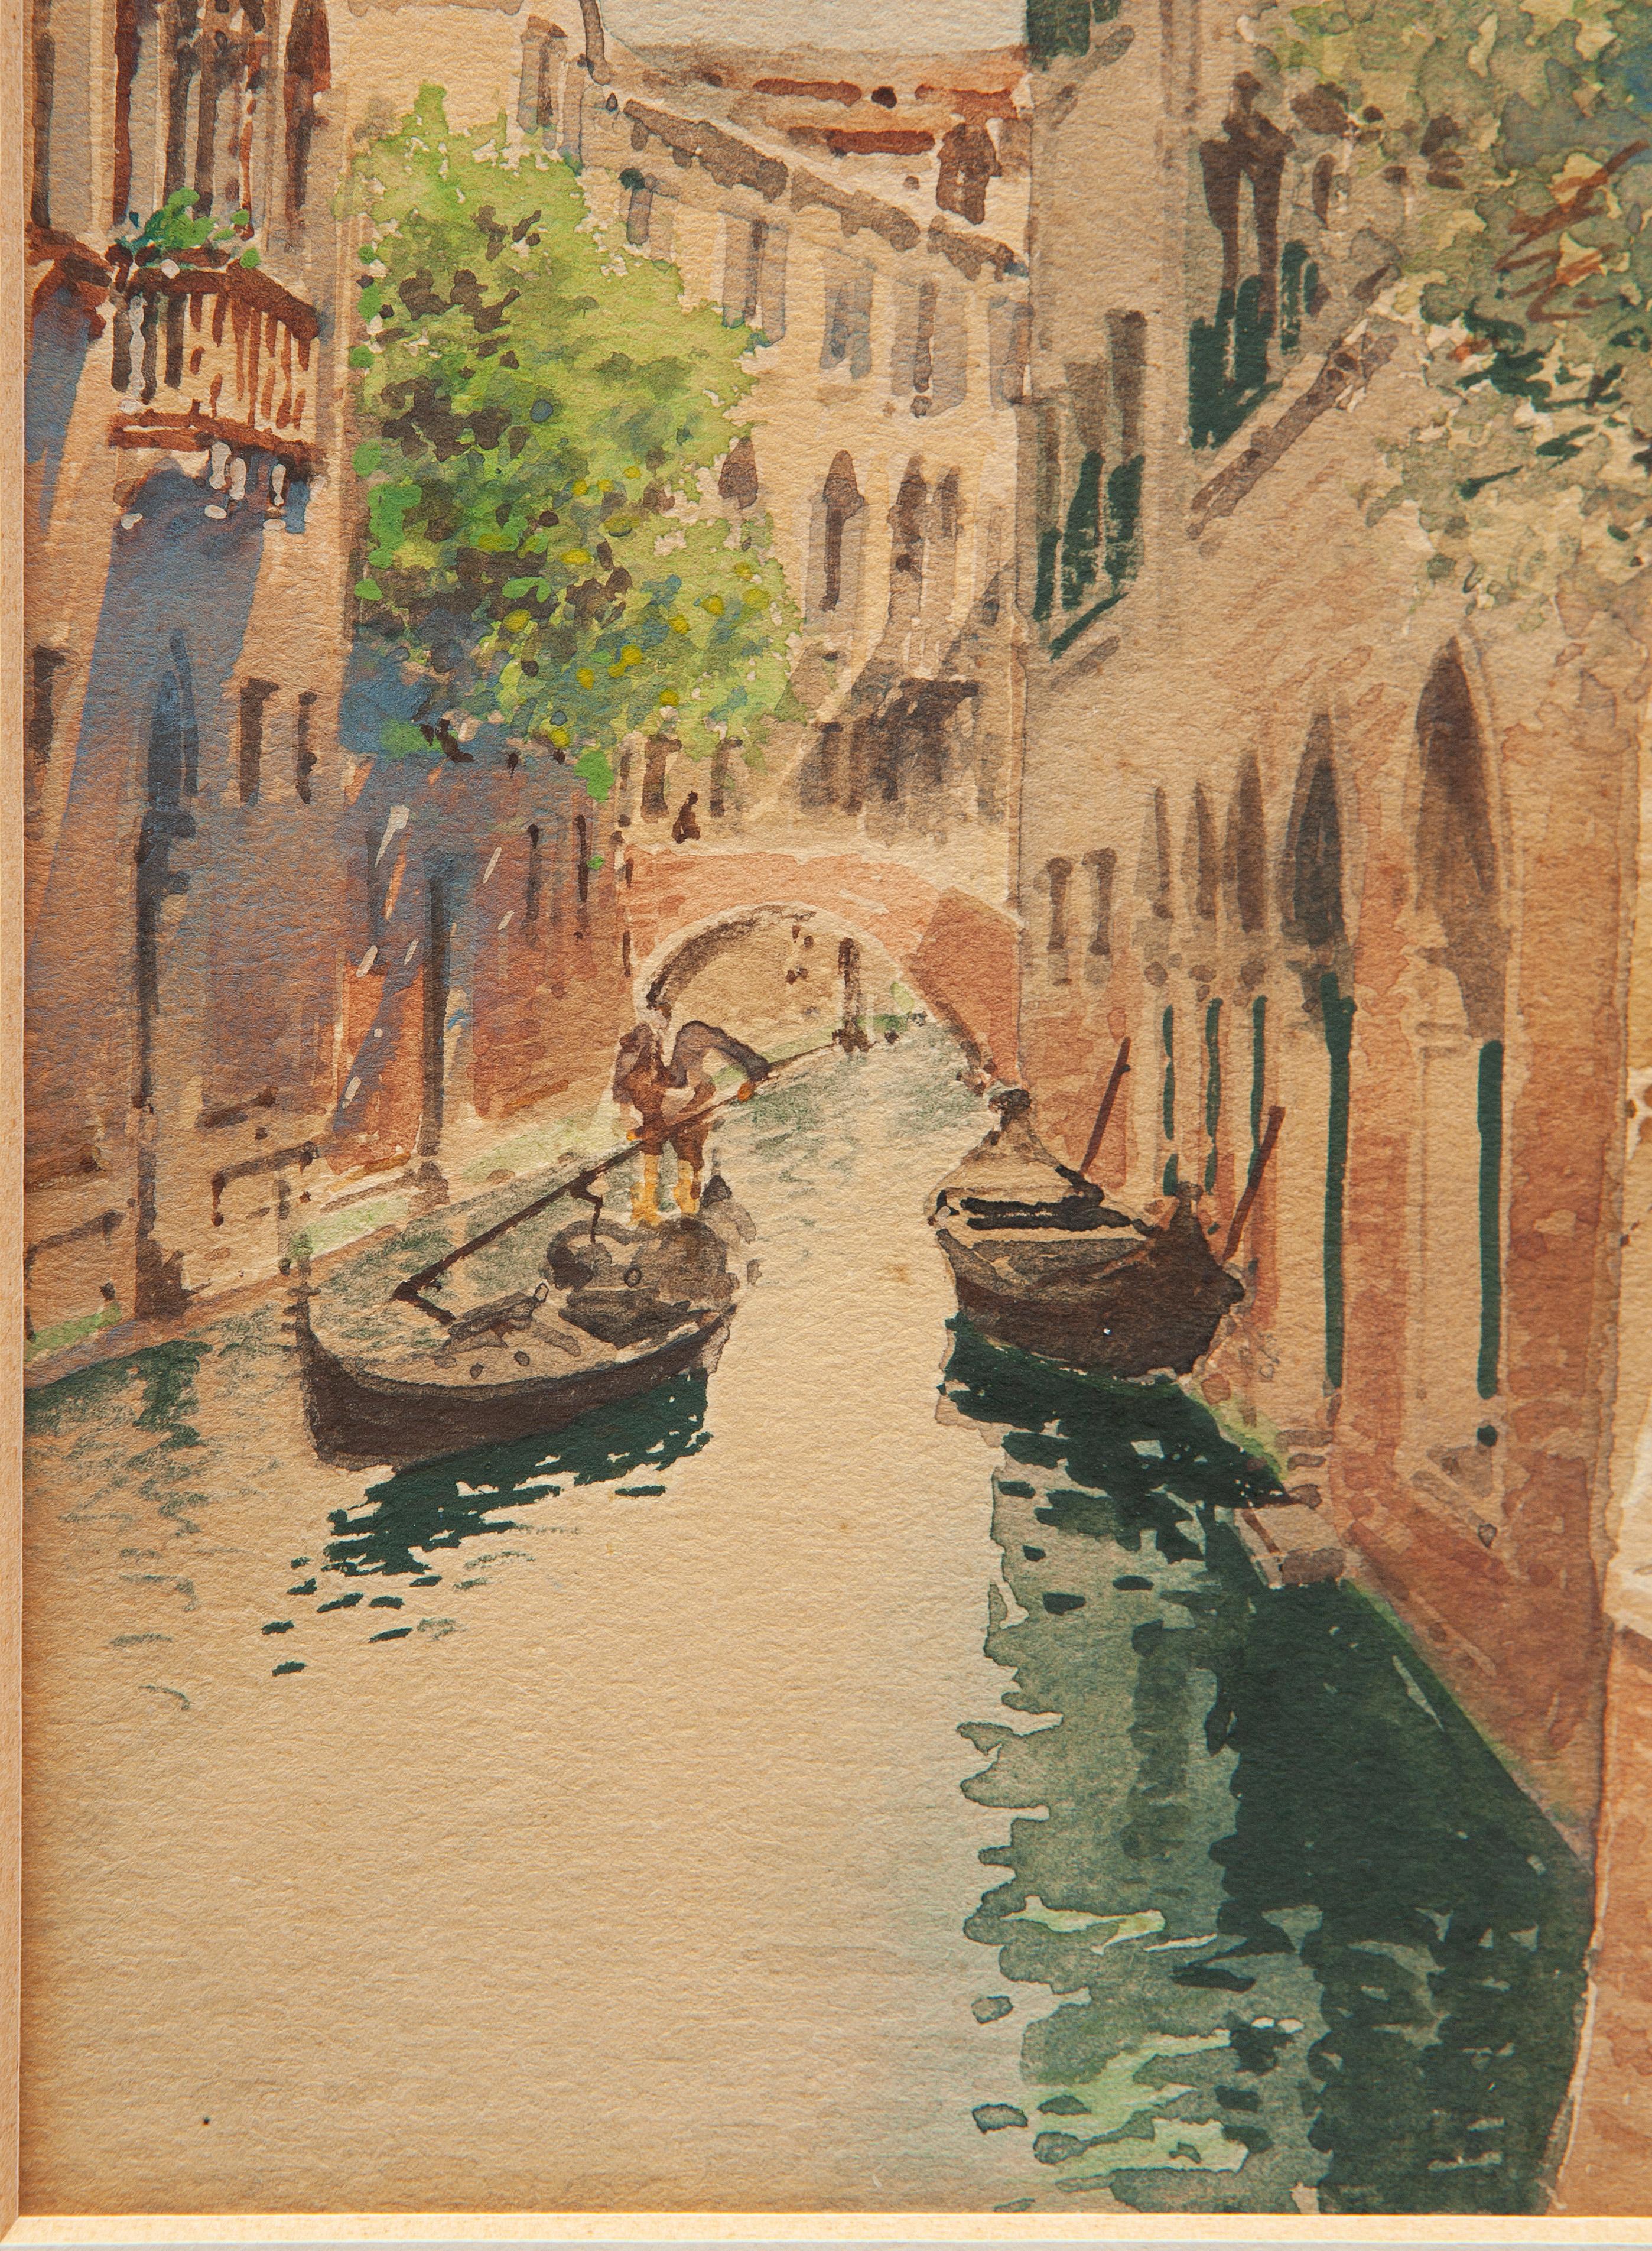 Andrea Biondetti (1851-1946)

Kanal mit Gondel in Venedig
Aquarell auf Papier
Abmessungen: 24x15 cm  (48x39 cm einschließlich Rahmen)
Letztes Viertel des 19. Jahrhunderts
Signiert unten rechts
Das Gemälde wurde mit unsichtbarem Glas gerahmt